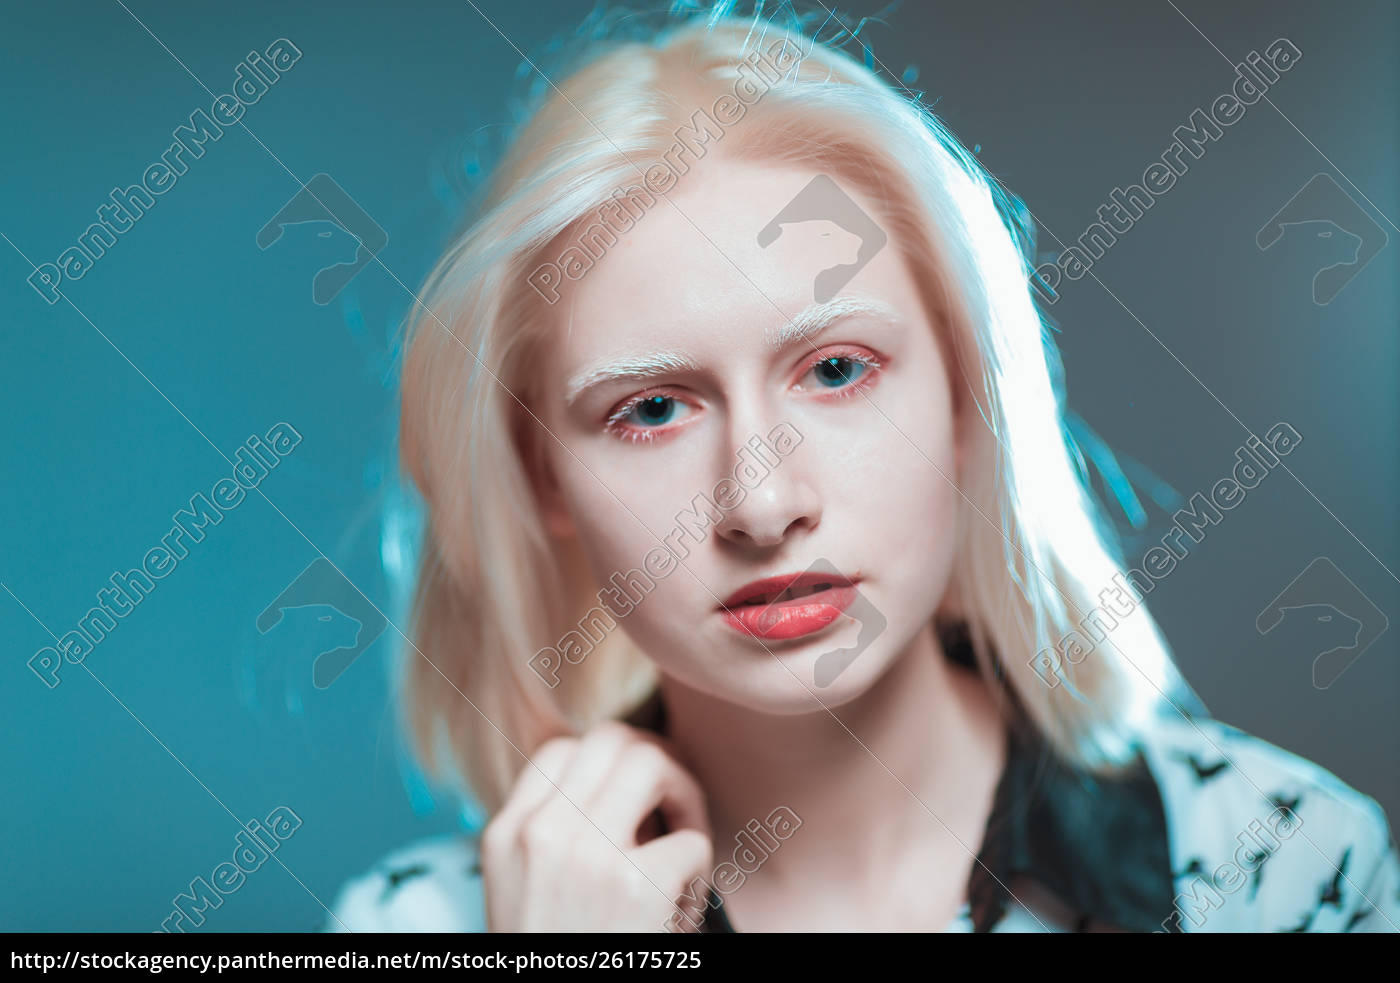 retrato de rubia chica albina en el estudio - Foto de archivo #26175725 |  Agencia de stock PantherMedia